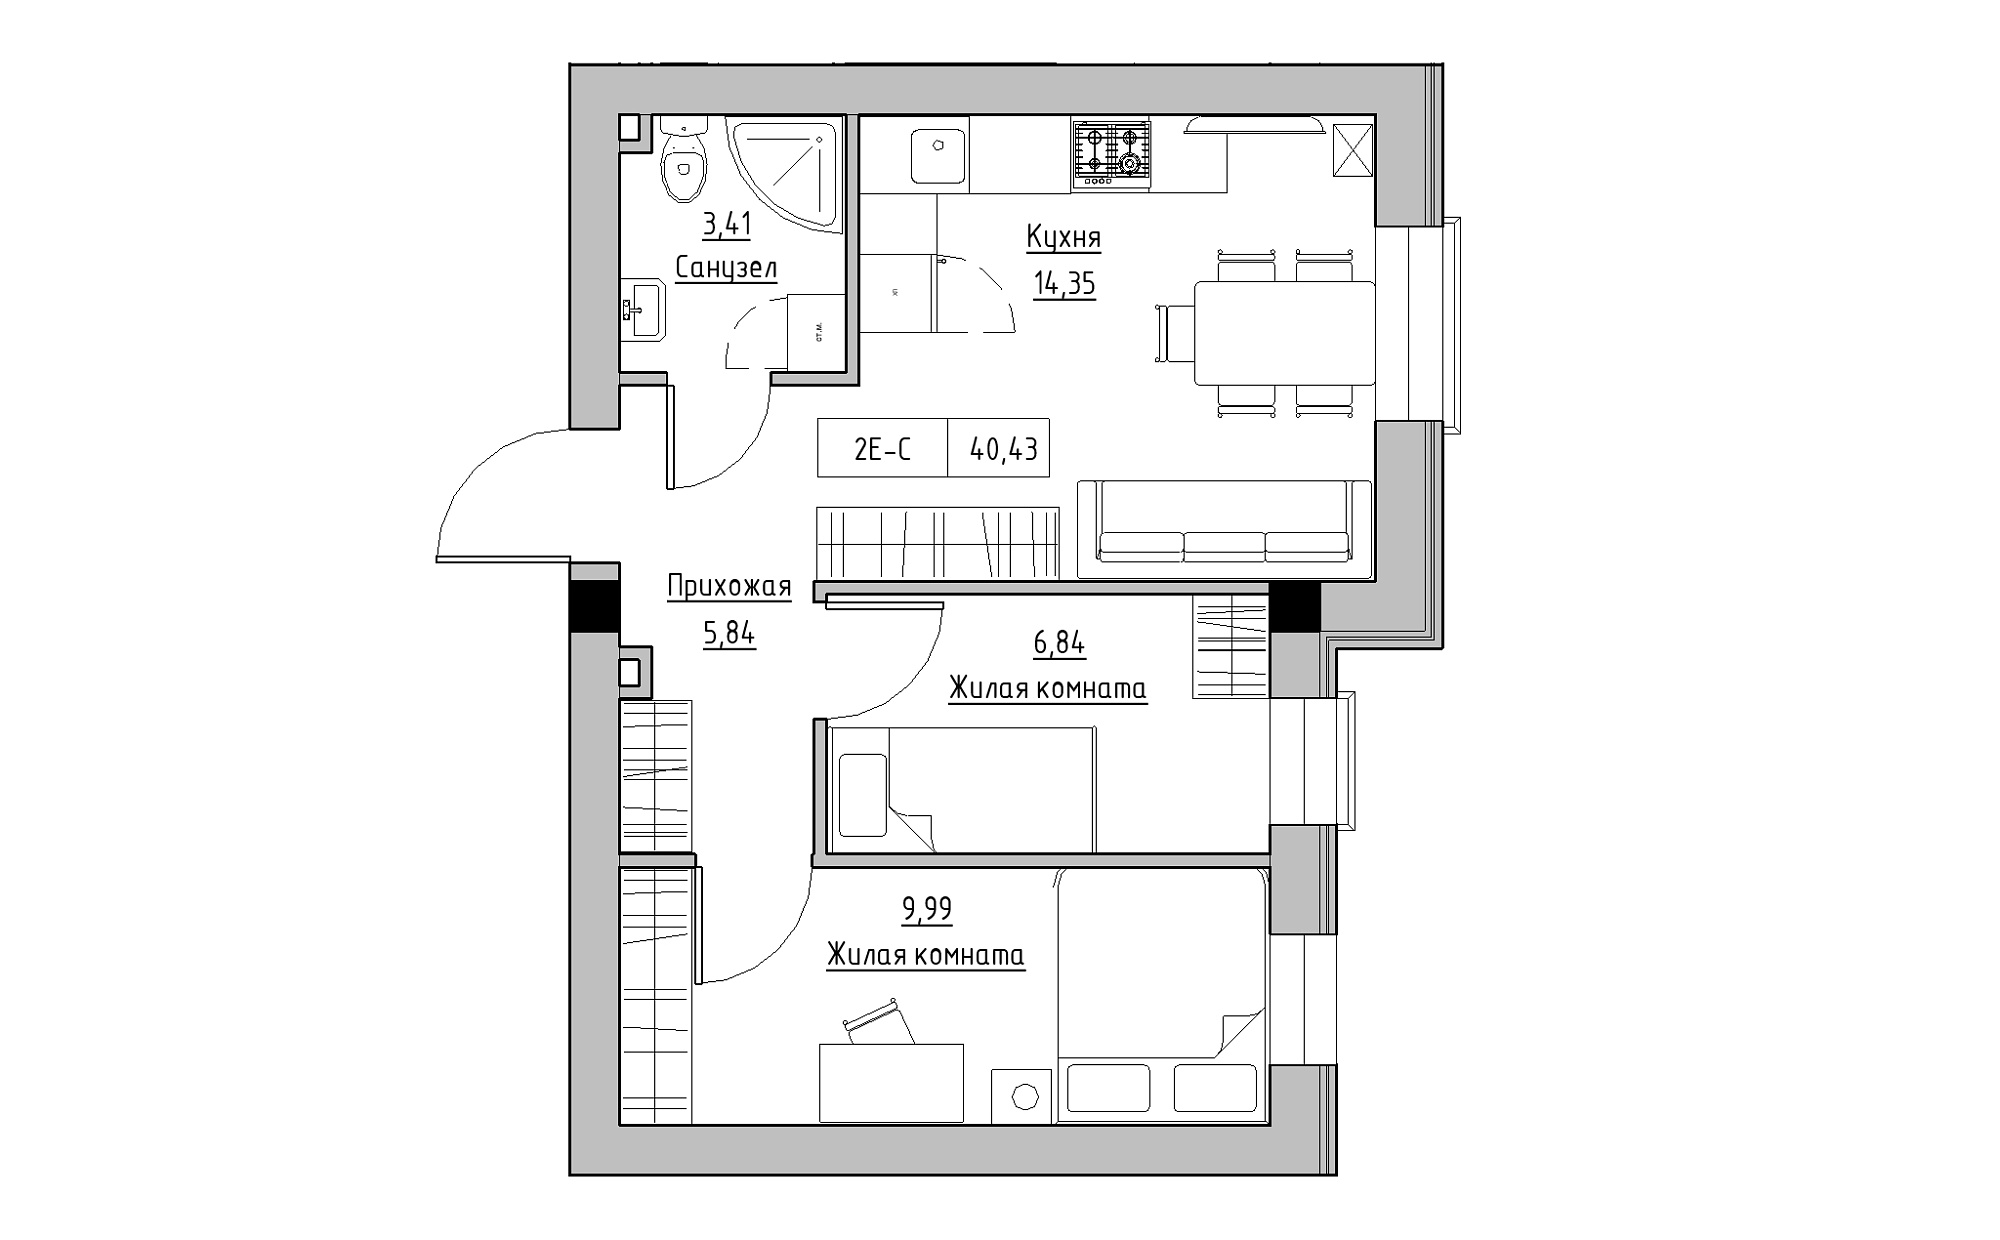 Планировка 2-к квартира площей 40.43м2, KS-022-01/0010.